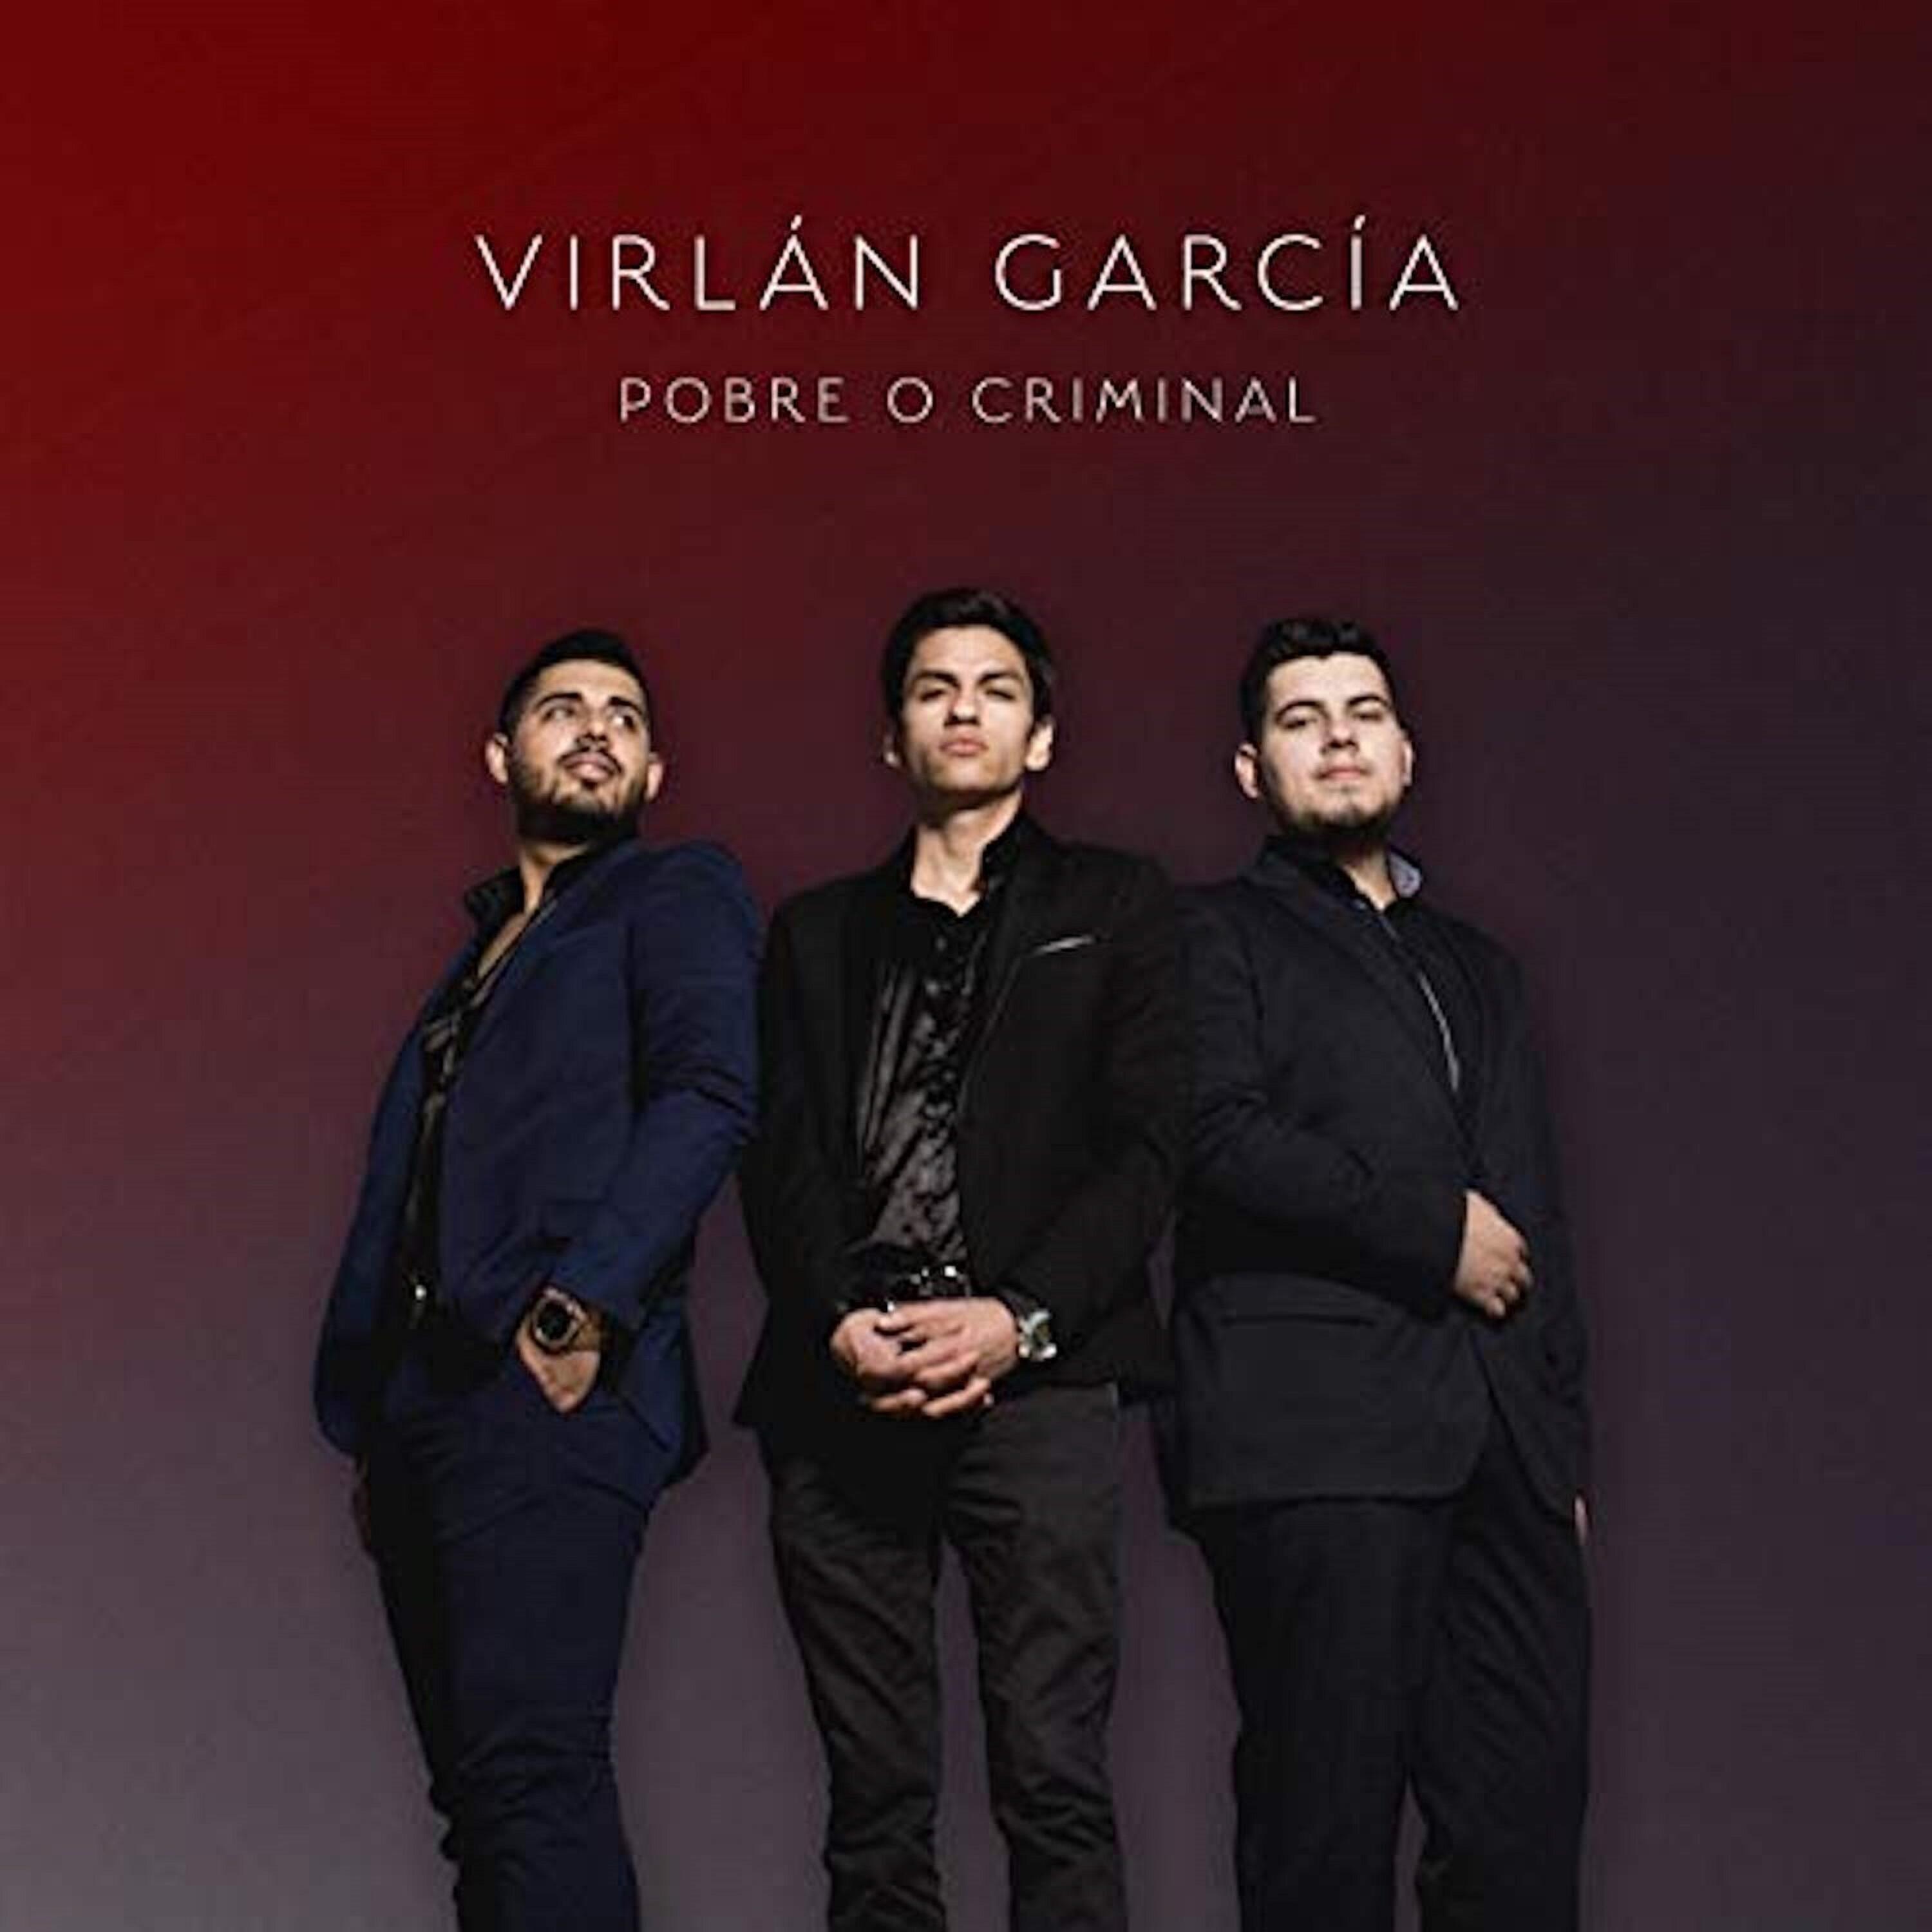 Stream Free Songs By Virlan Garcia Similar Artists Iheartradio